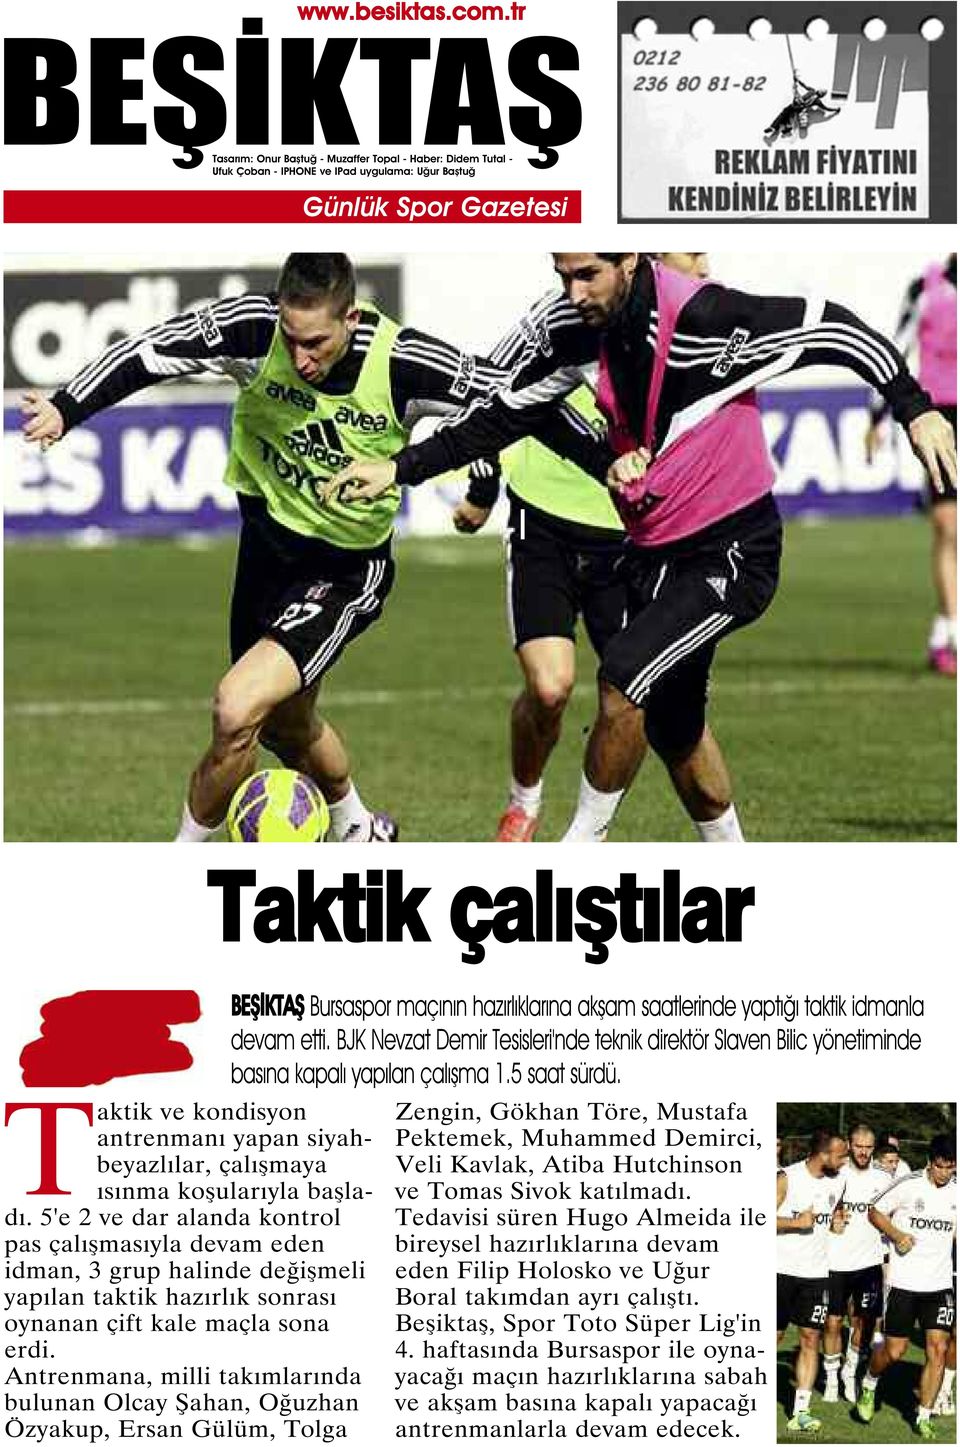 Antrenmana, milli takımlarında bulunan Olcay Şahan, Oğuzhan Özyakup, Ersan Gülüm, Tolga Bursaspor maçının hazırlıklarına akşam saatlerinde yaptığı taktik idmanla devam etti.